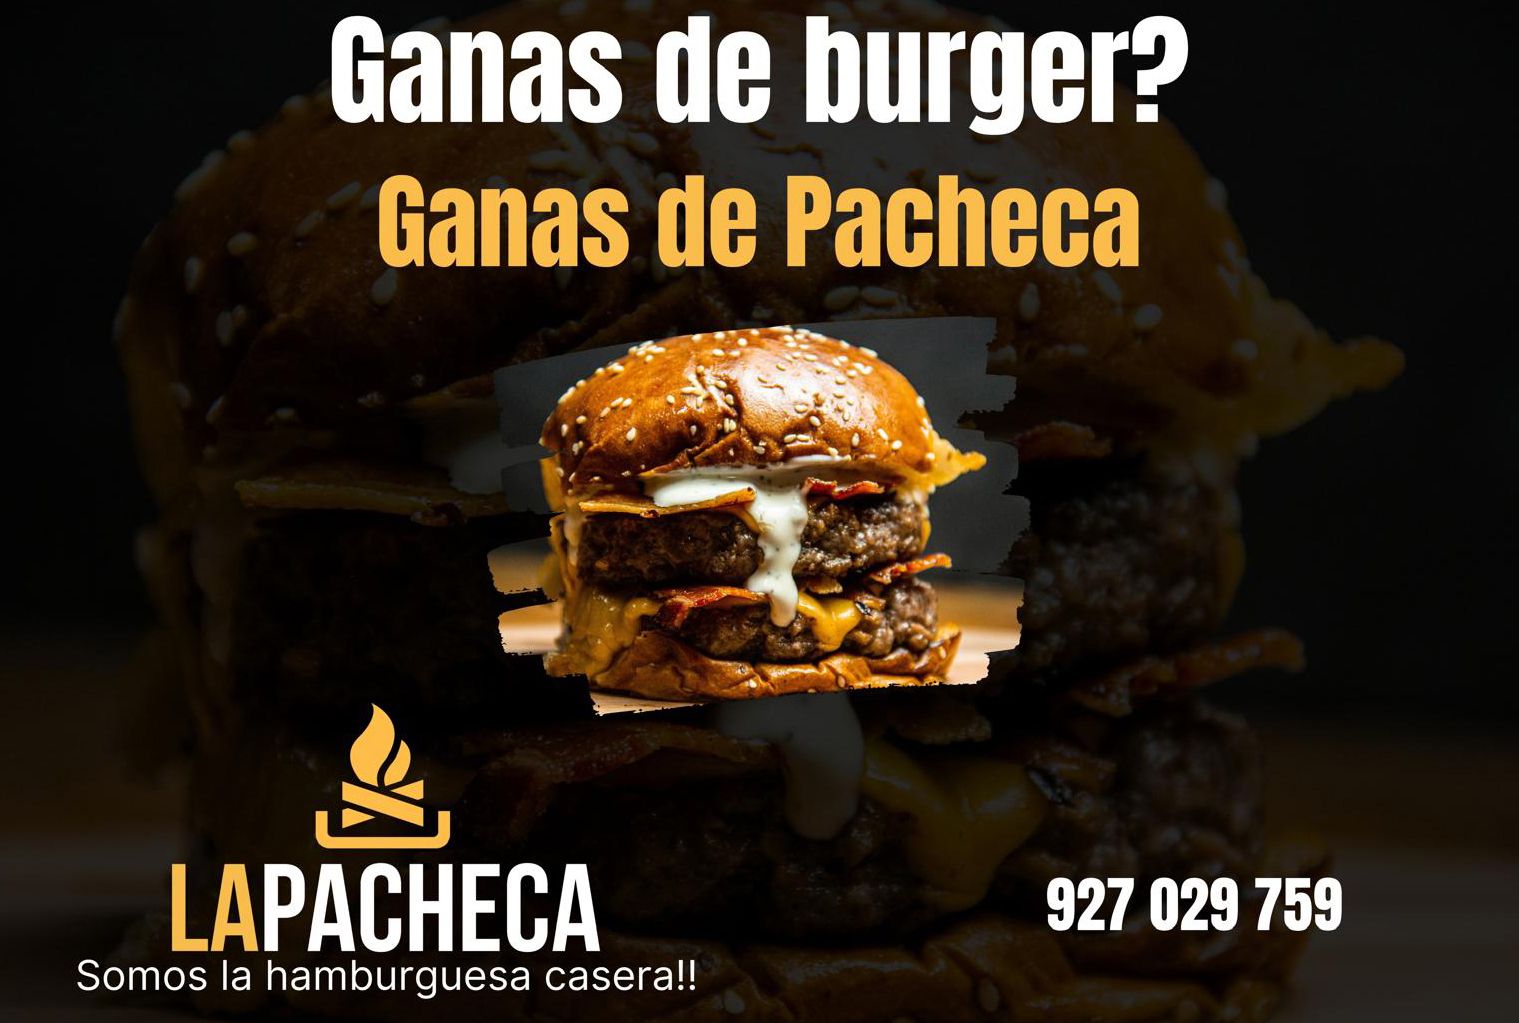 La Pacheca